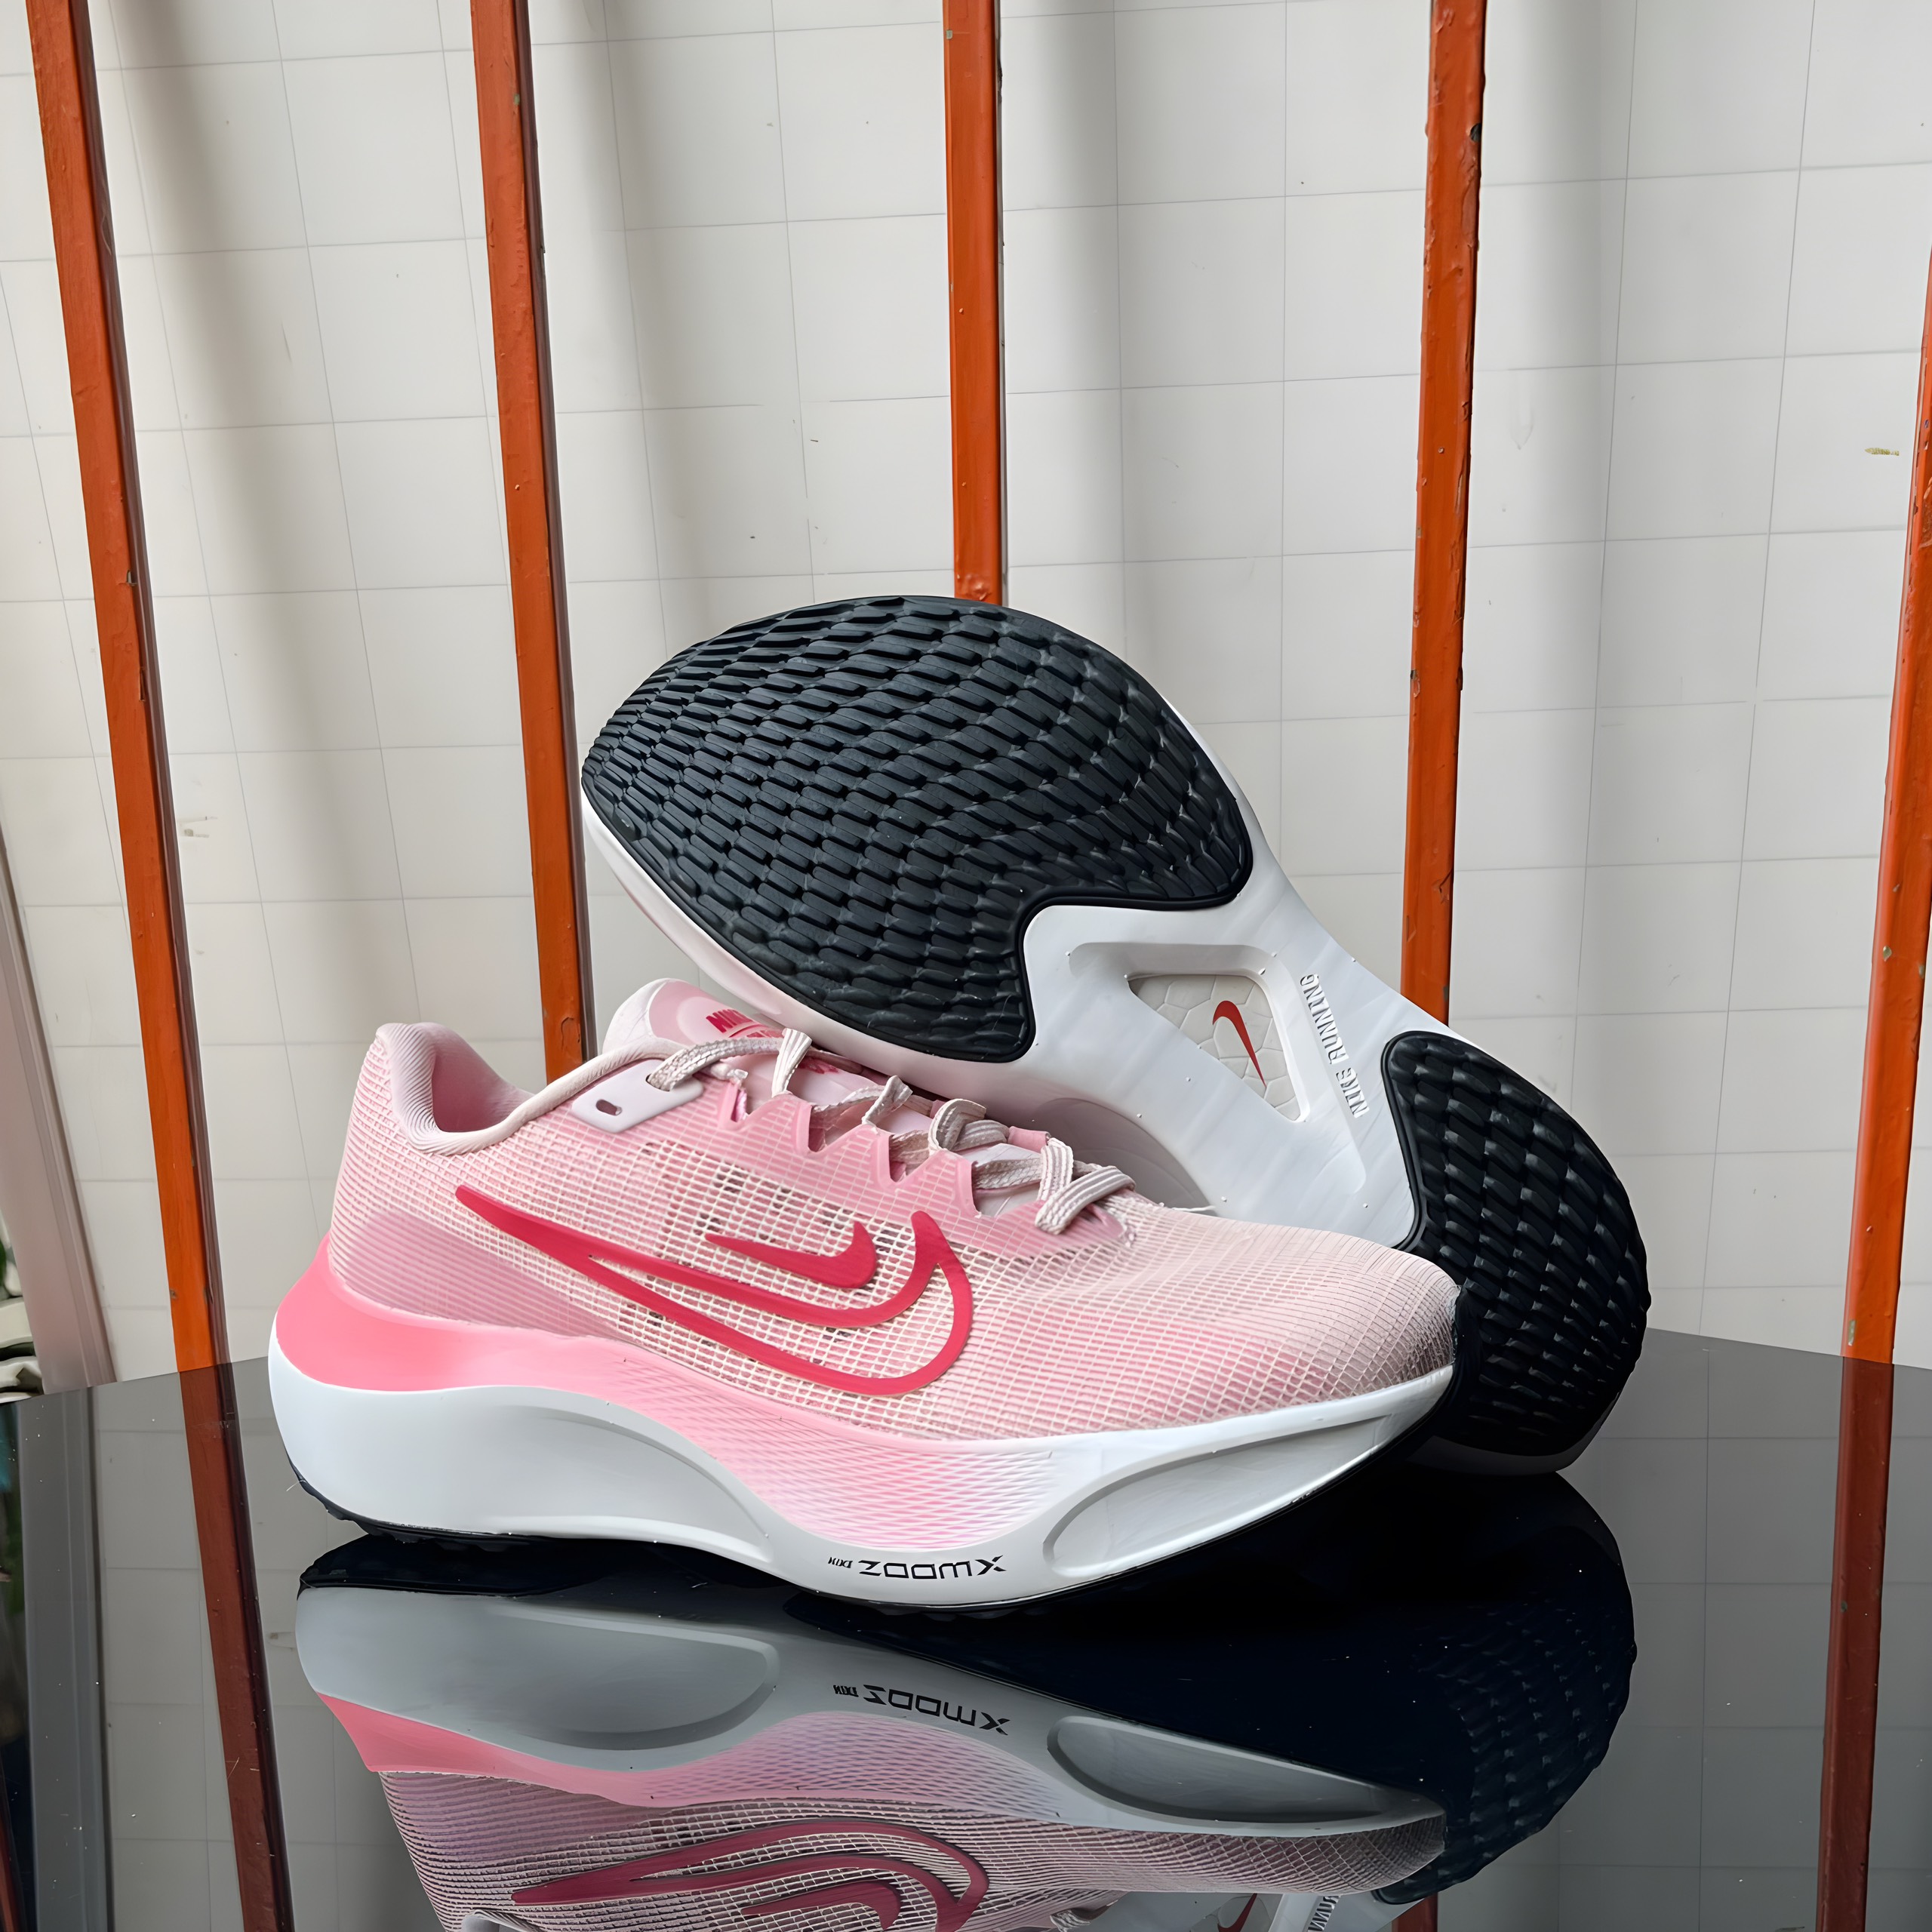 Giày chạy bộ Nike Air Zoom Fly 5 Đưa đến sự tự tin và thành công